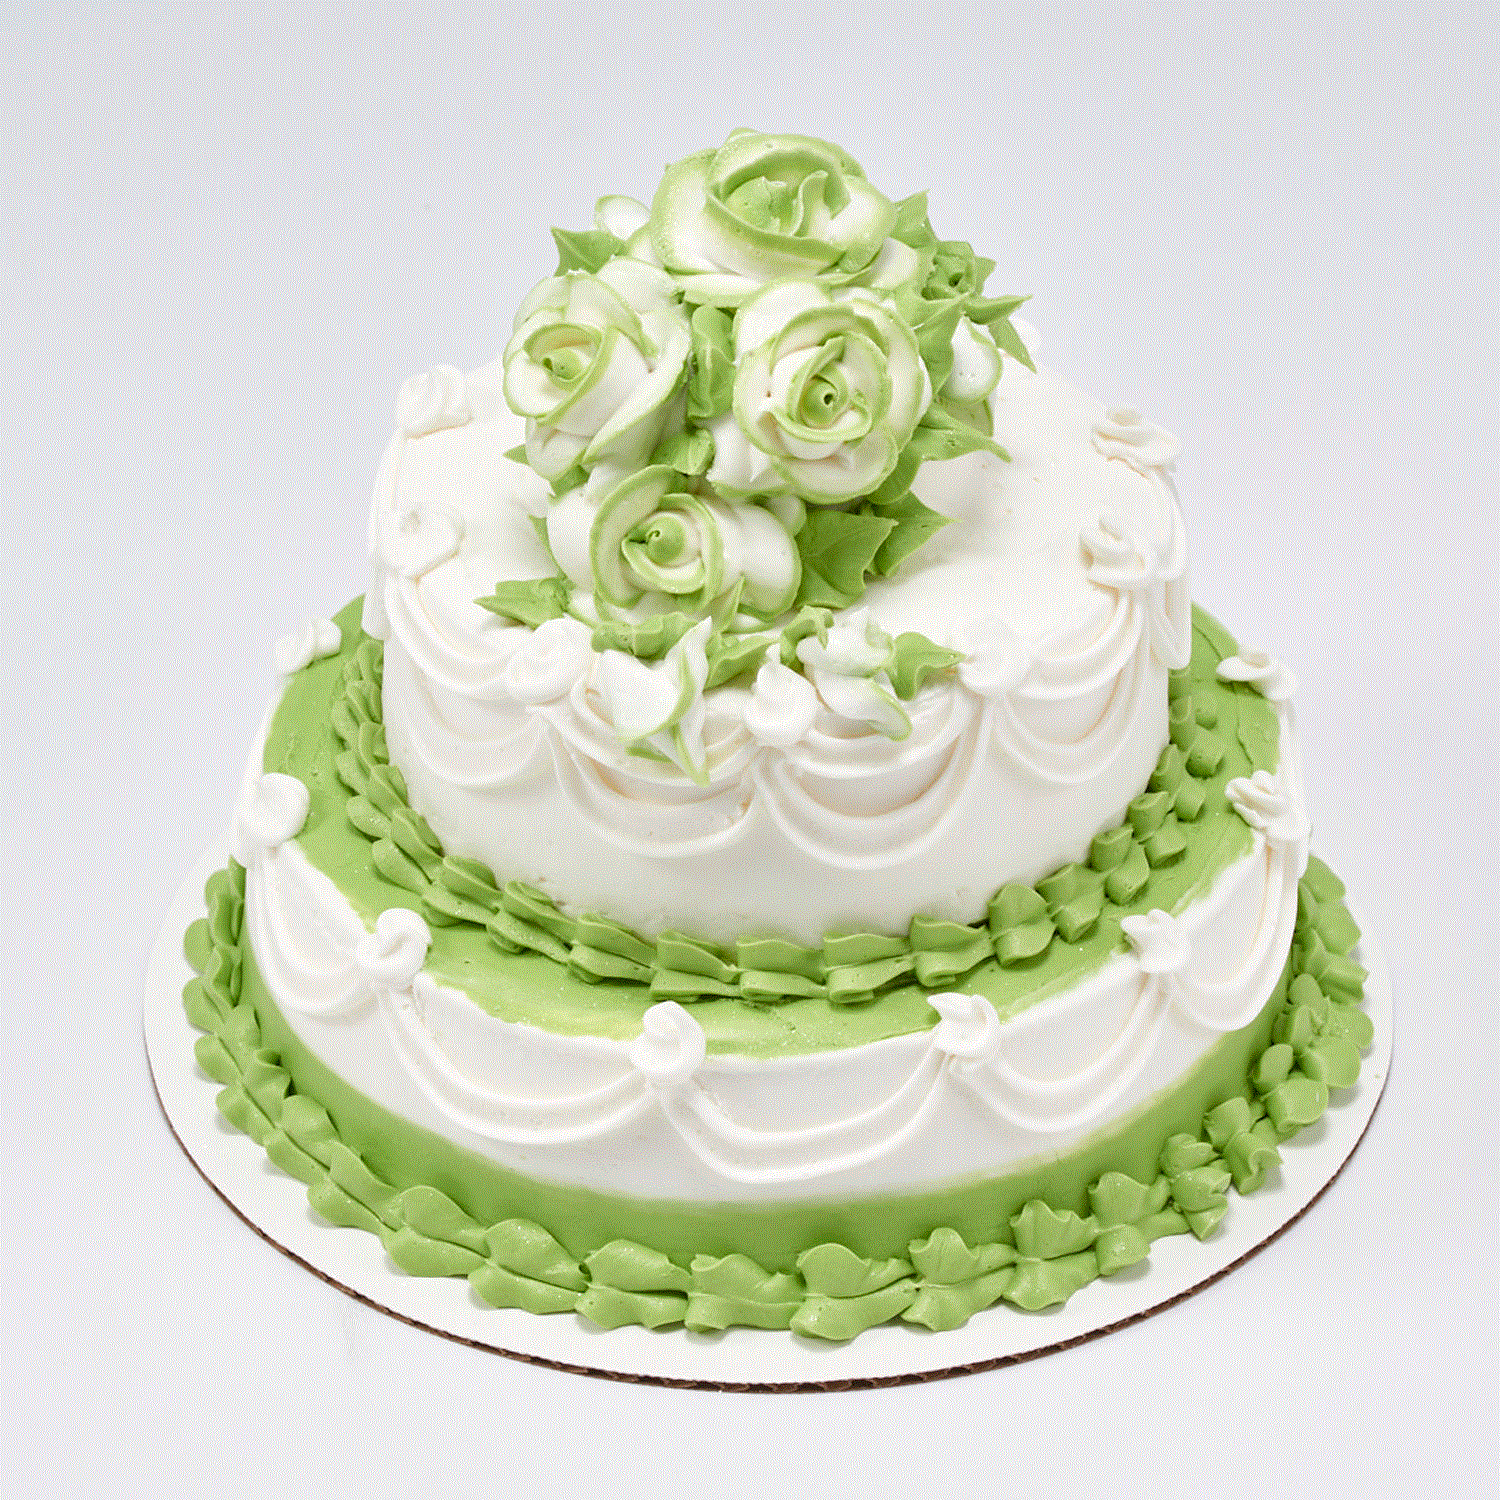 7 Hopes United Sustainable Wedding Registry - 100 Layer Cake